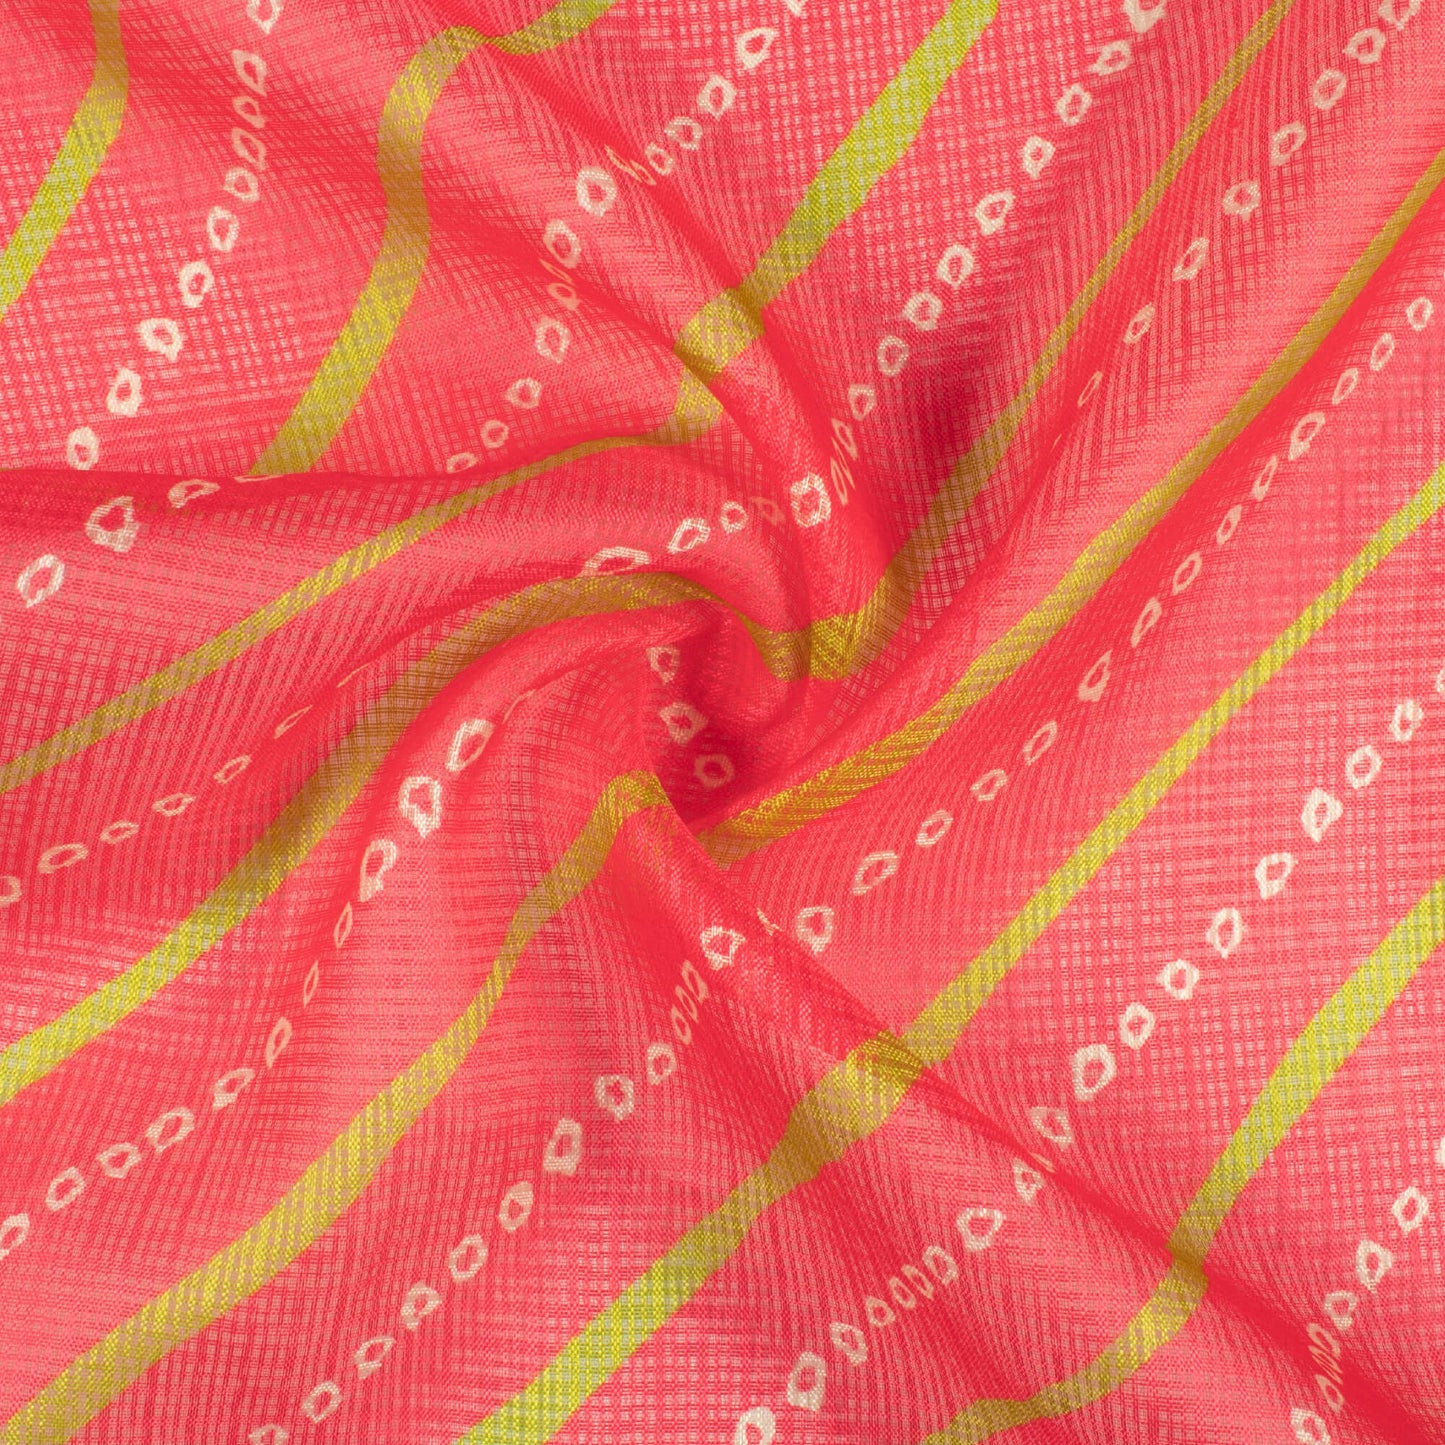 Persian Red And Pear Green Bandhani Pattern Digital Print Kota Doria Fabric